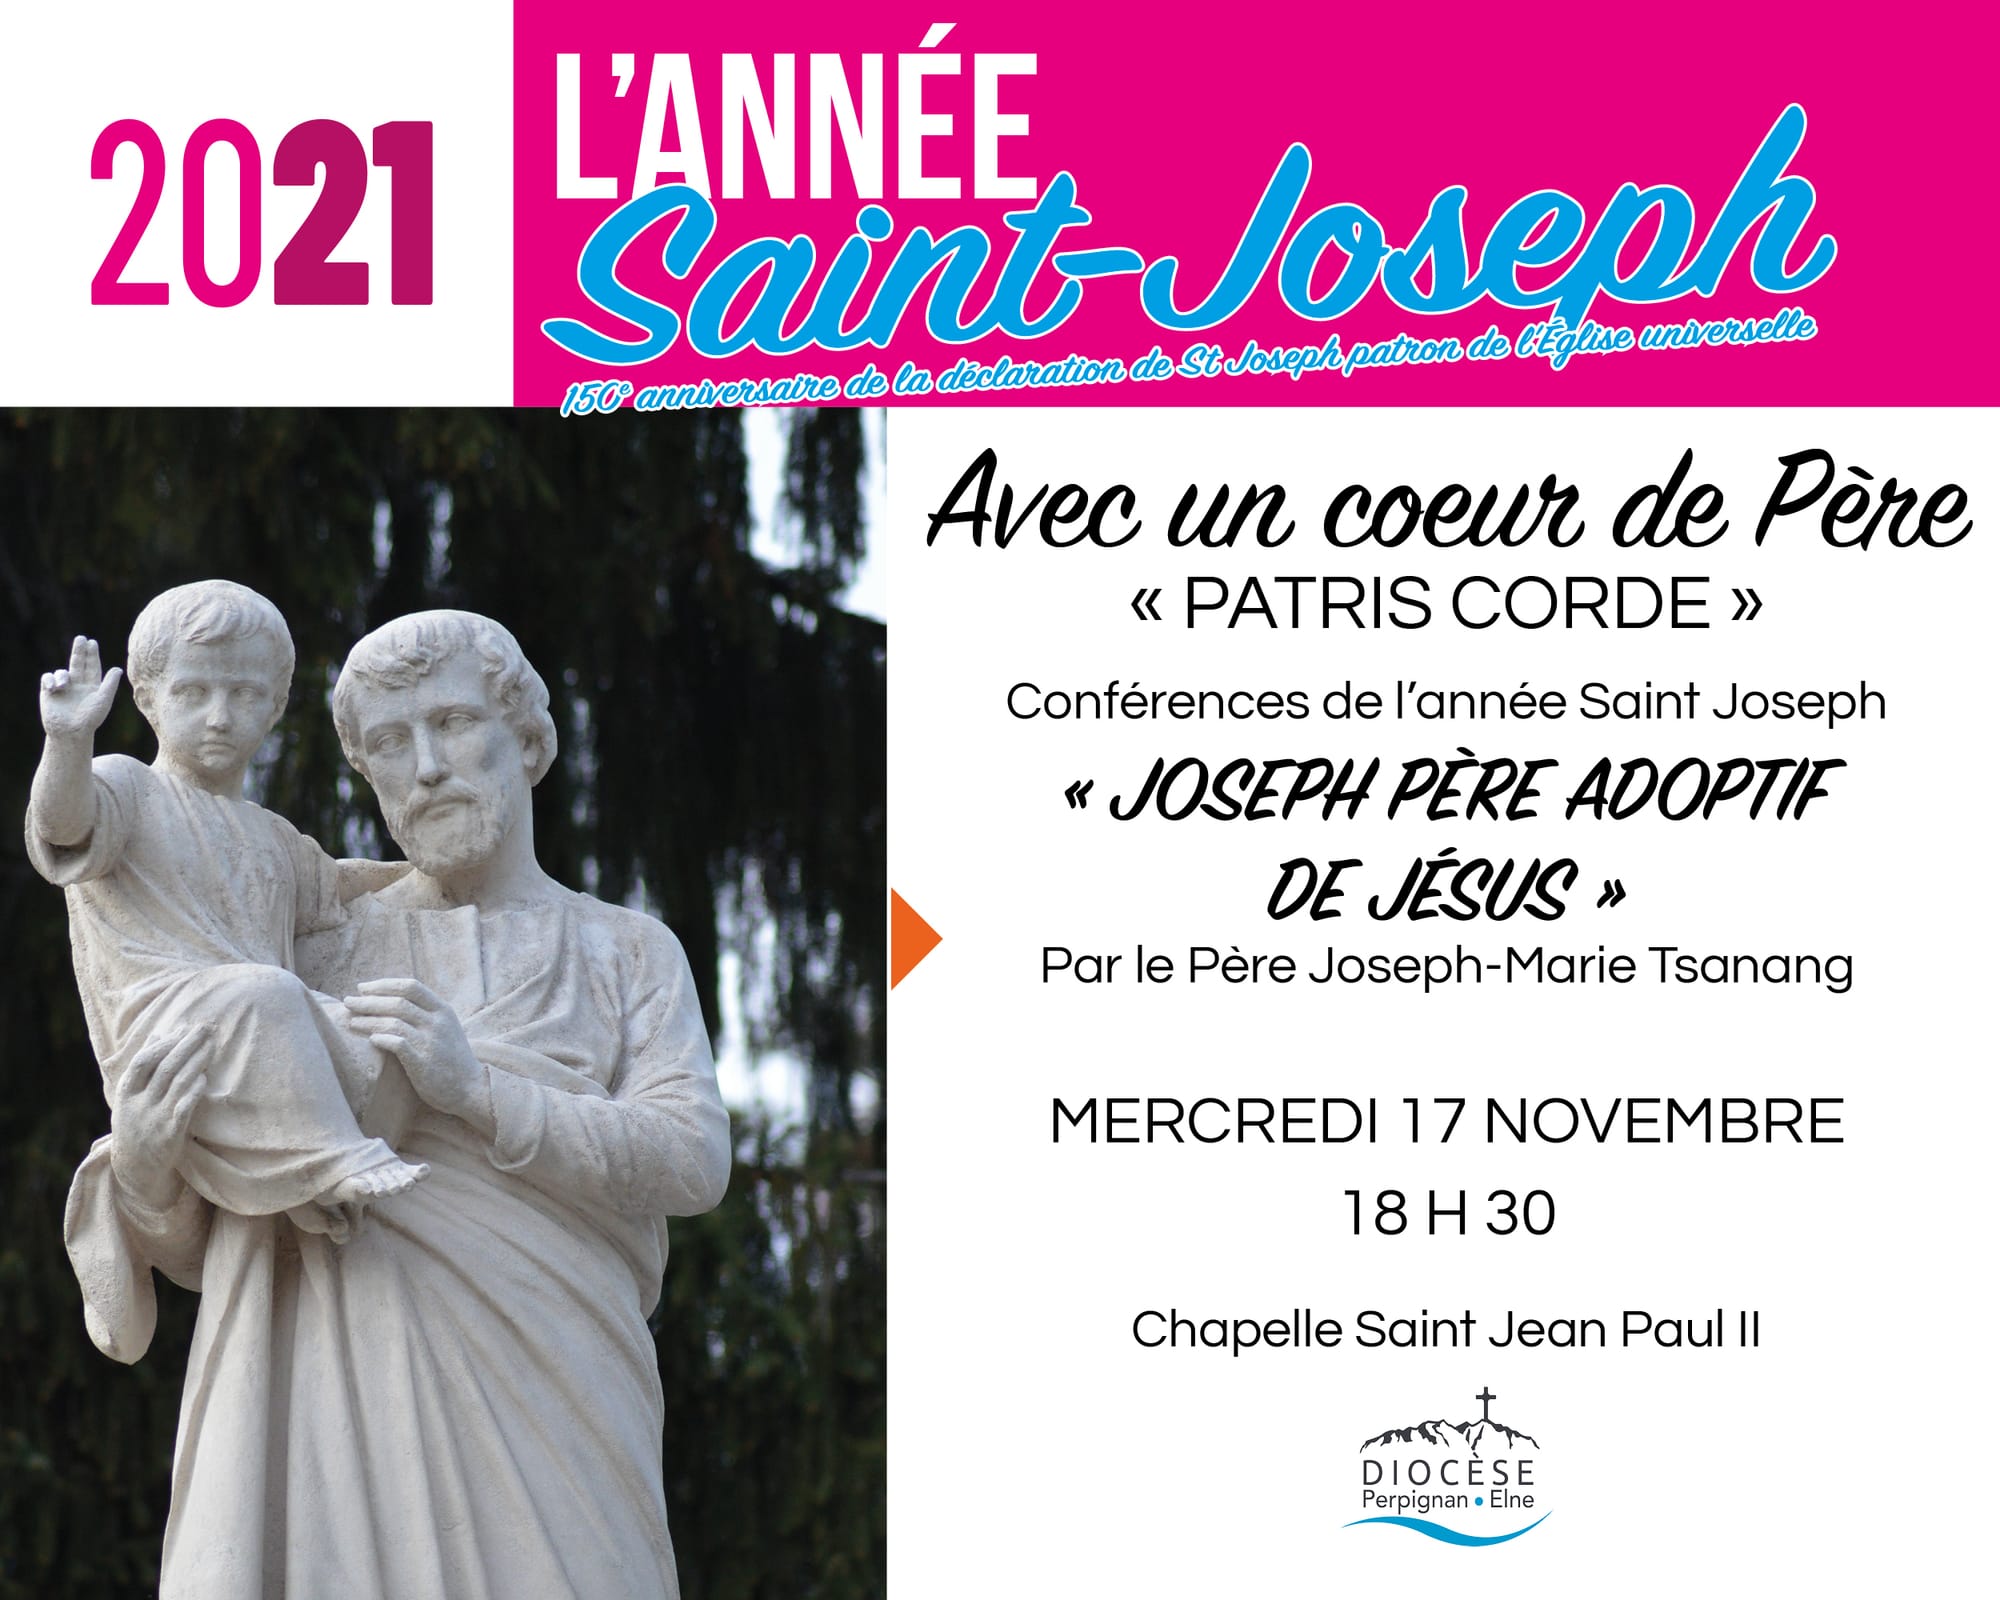 Année Saint Joseph : conférence "Joseph, père adoptif de Jésus", par la P. Tsanang le 17 novembre, chapelle St Jean Paul II